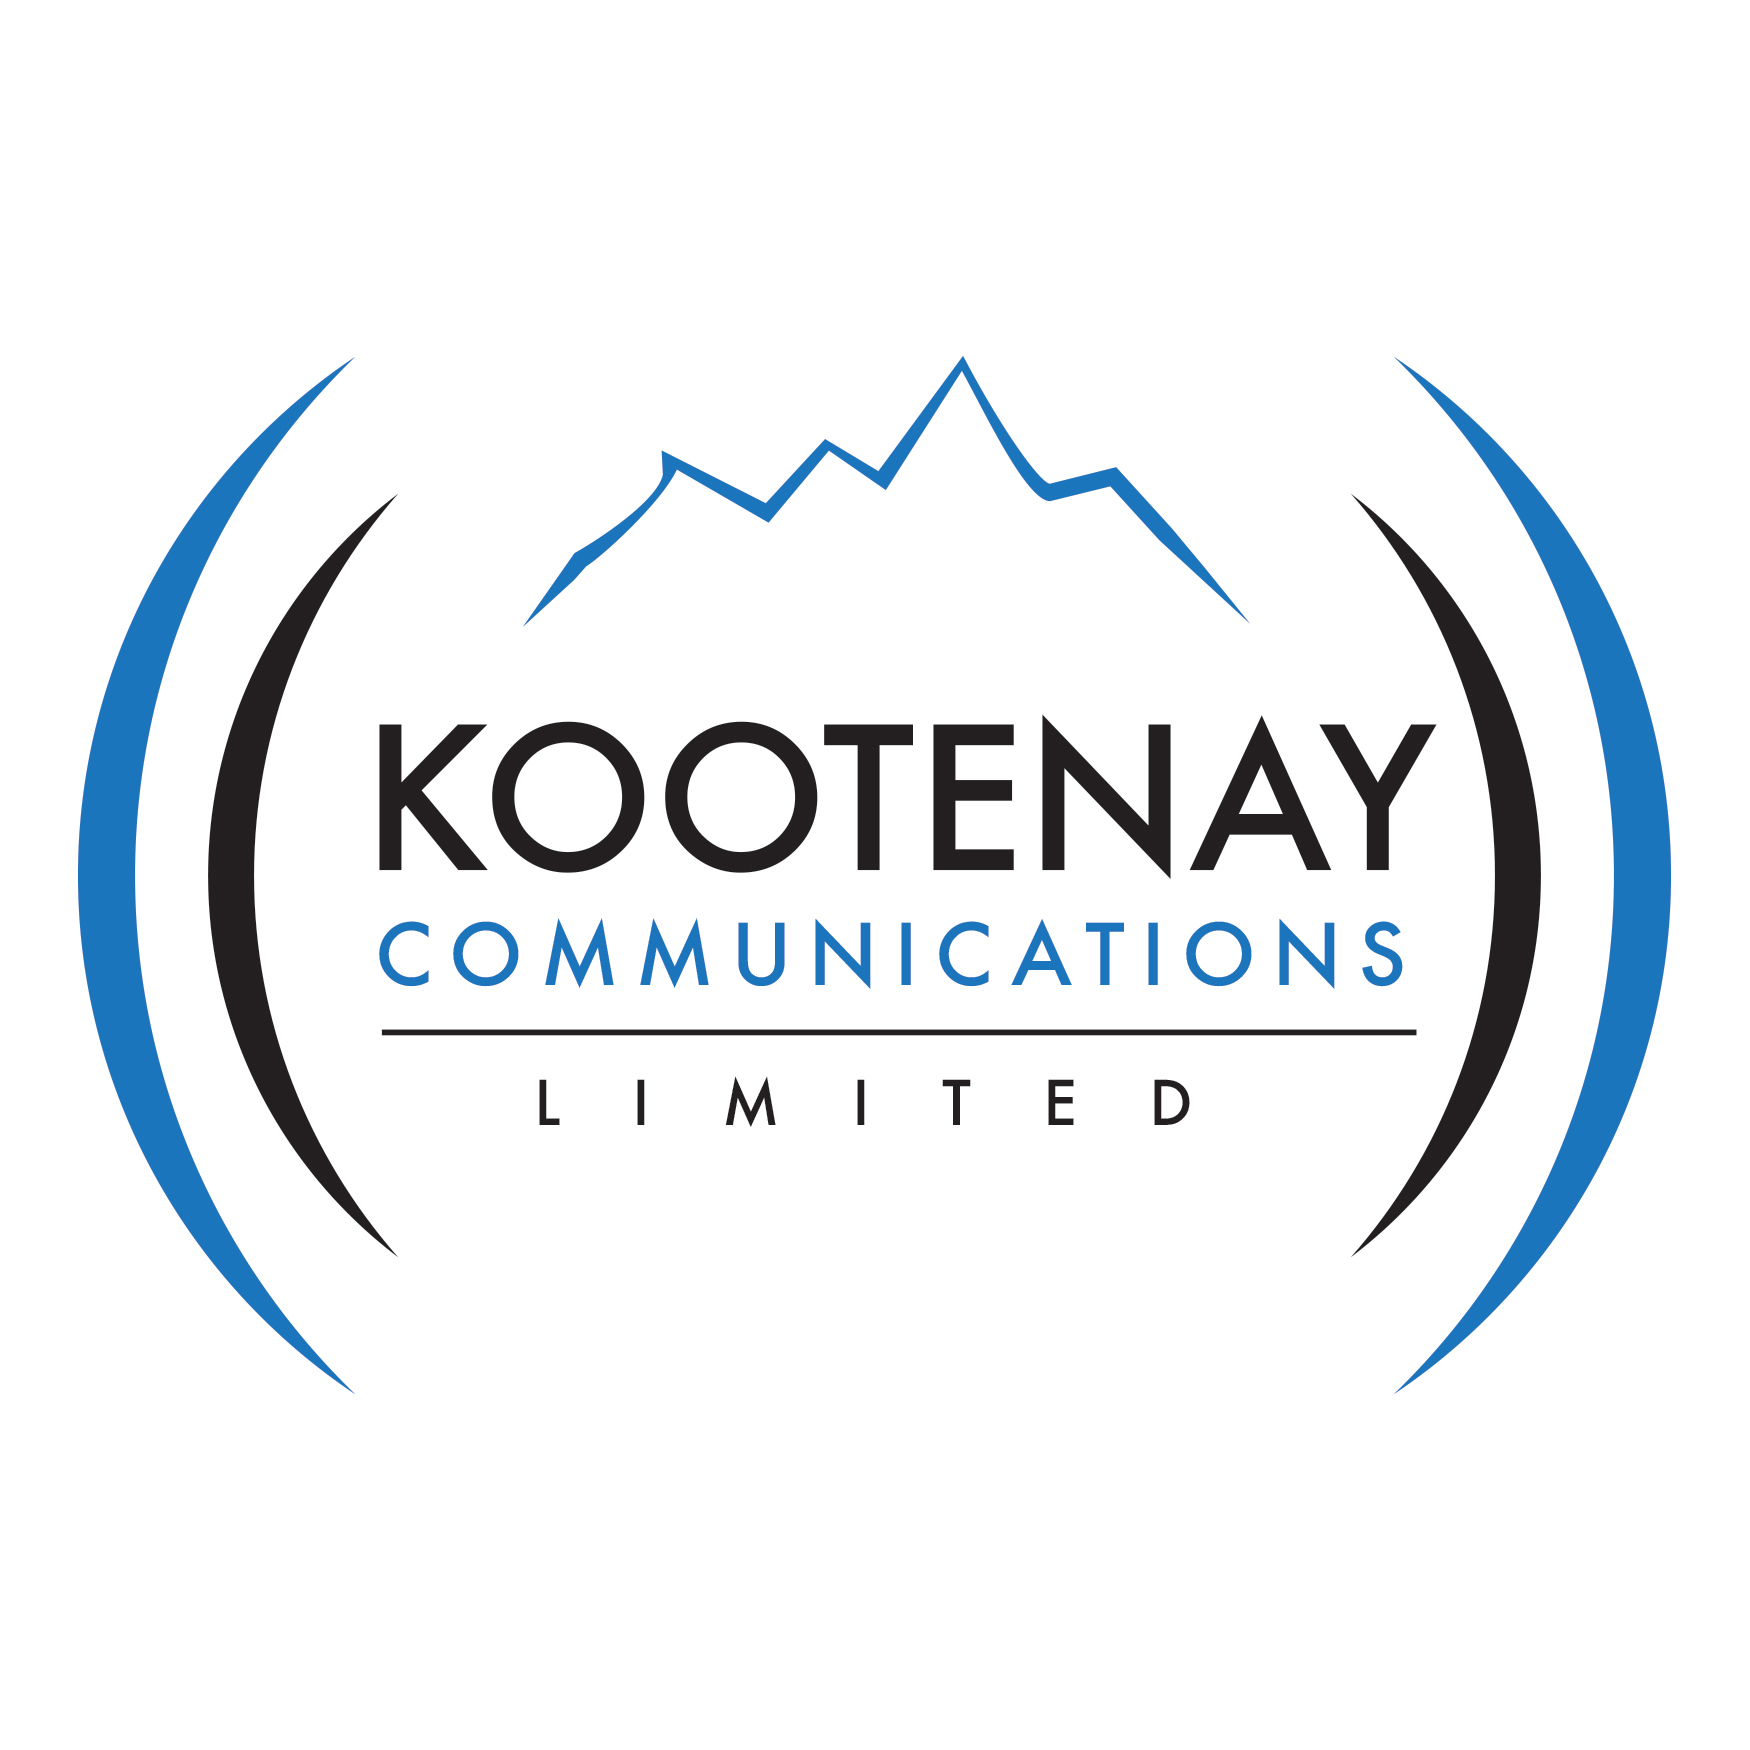 Kootenay Communications